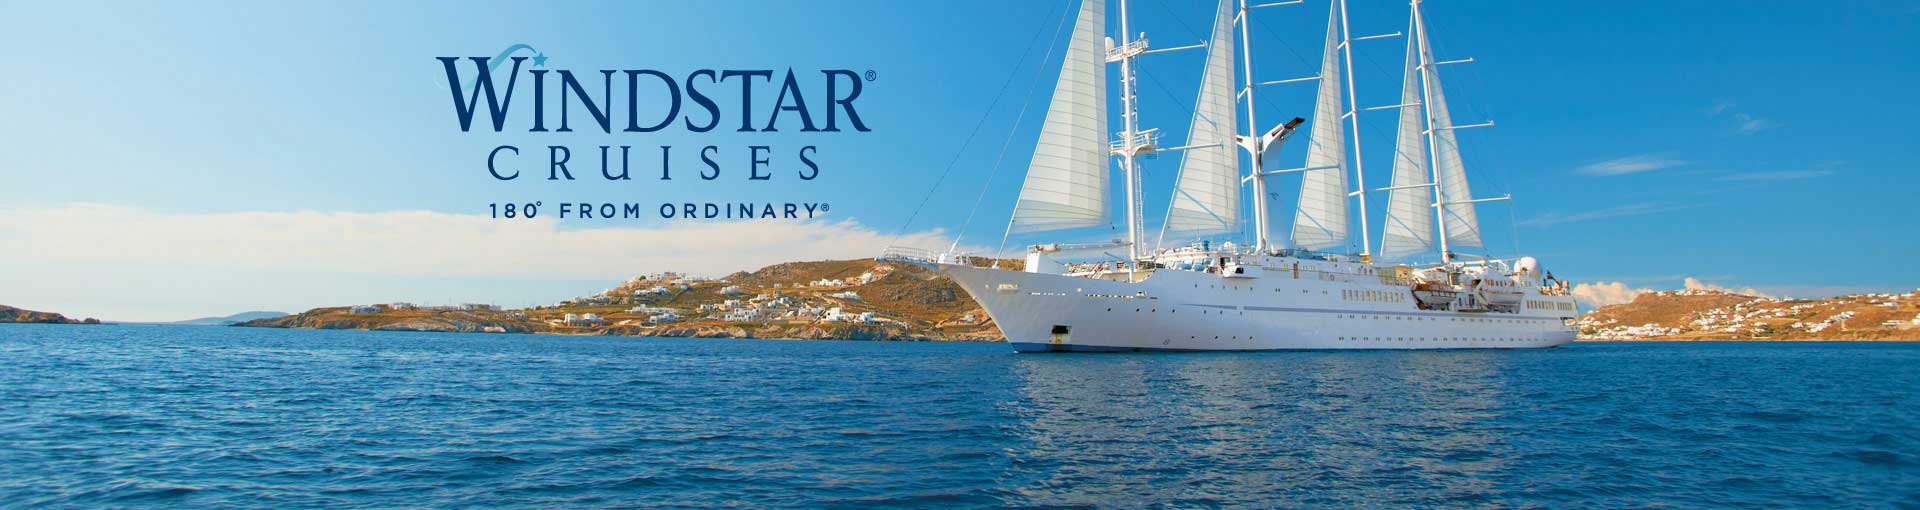 windstar cruise merchandise